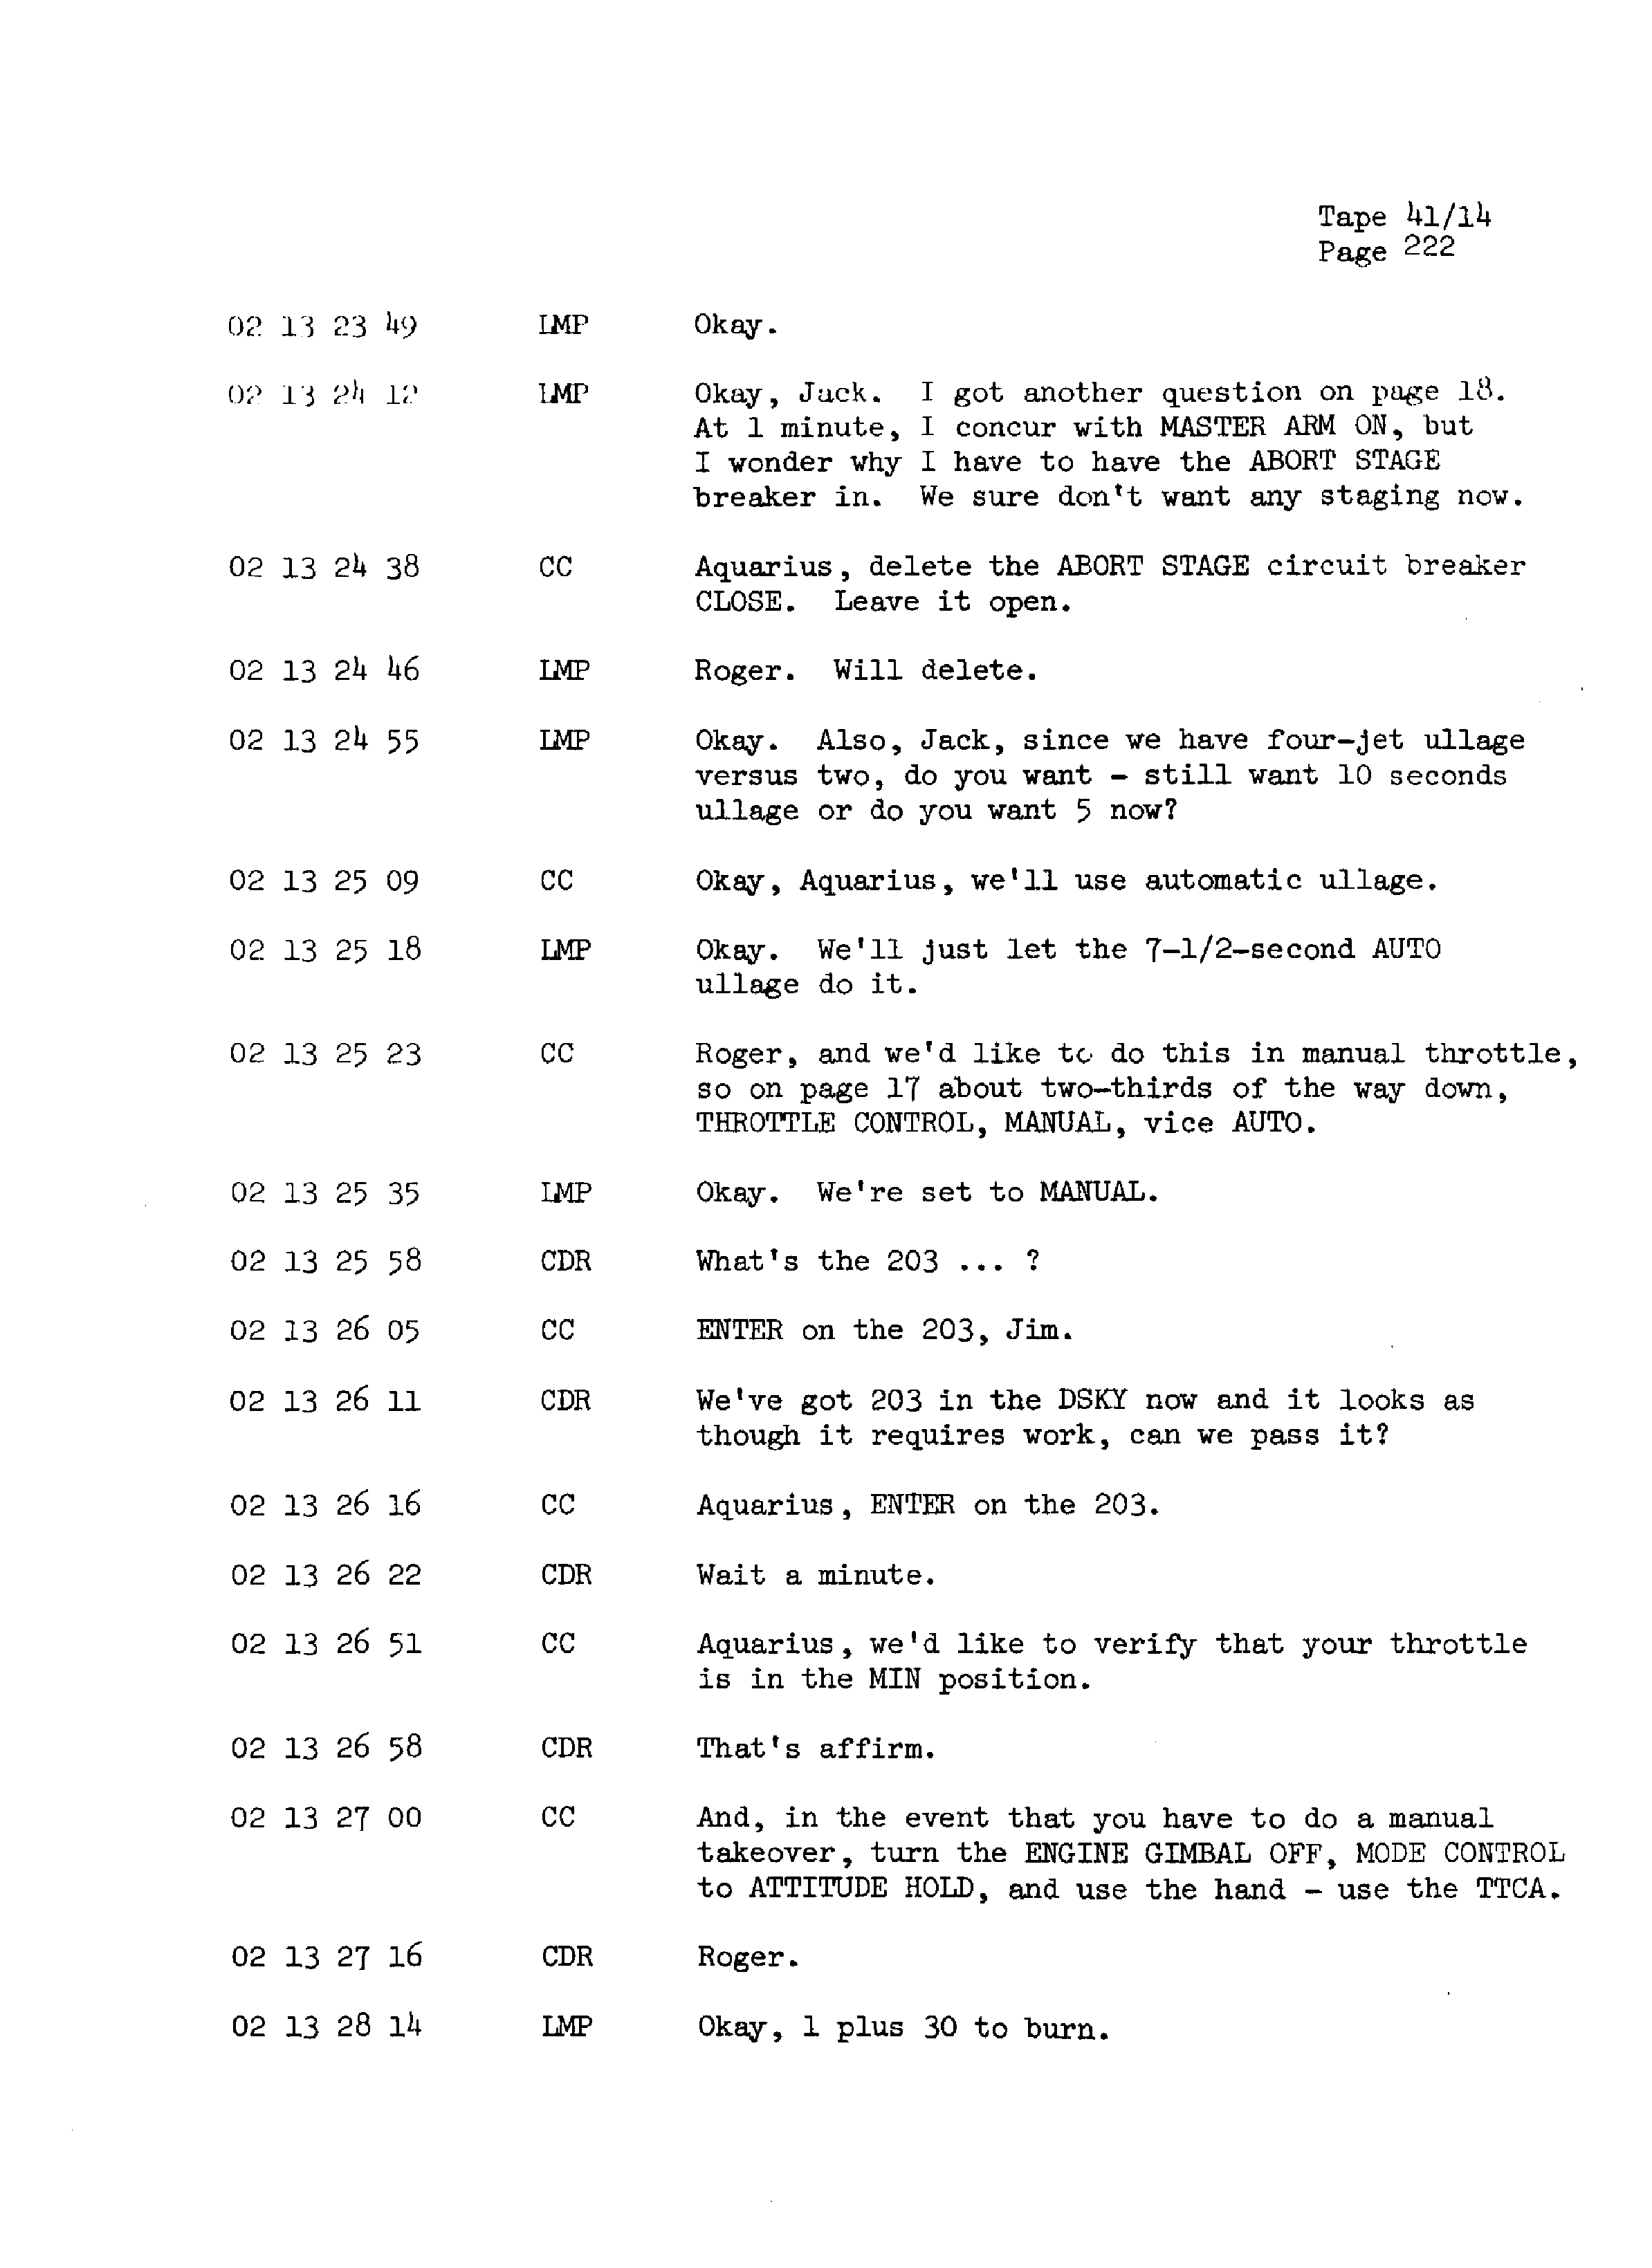 Page 229 of Apollo 13’s original transcript